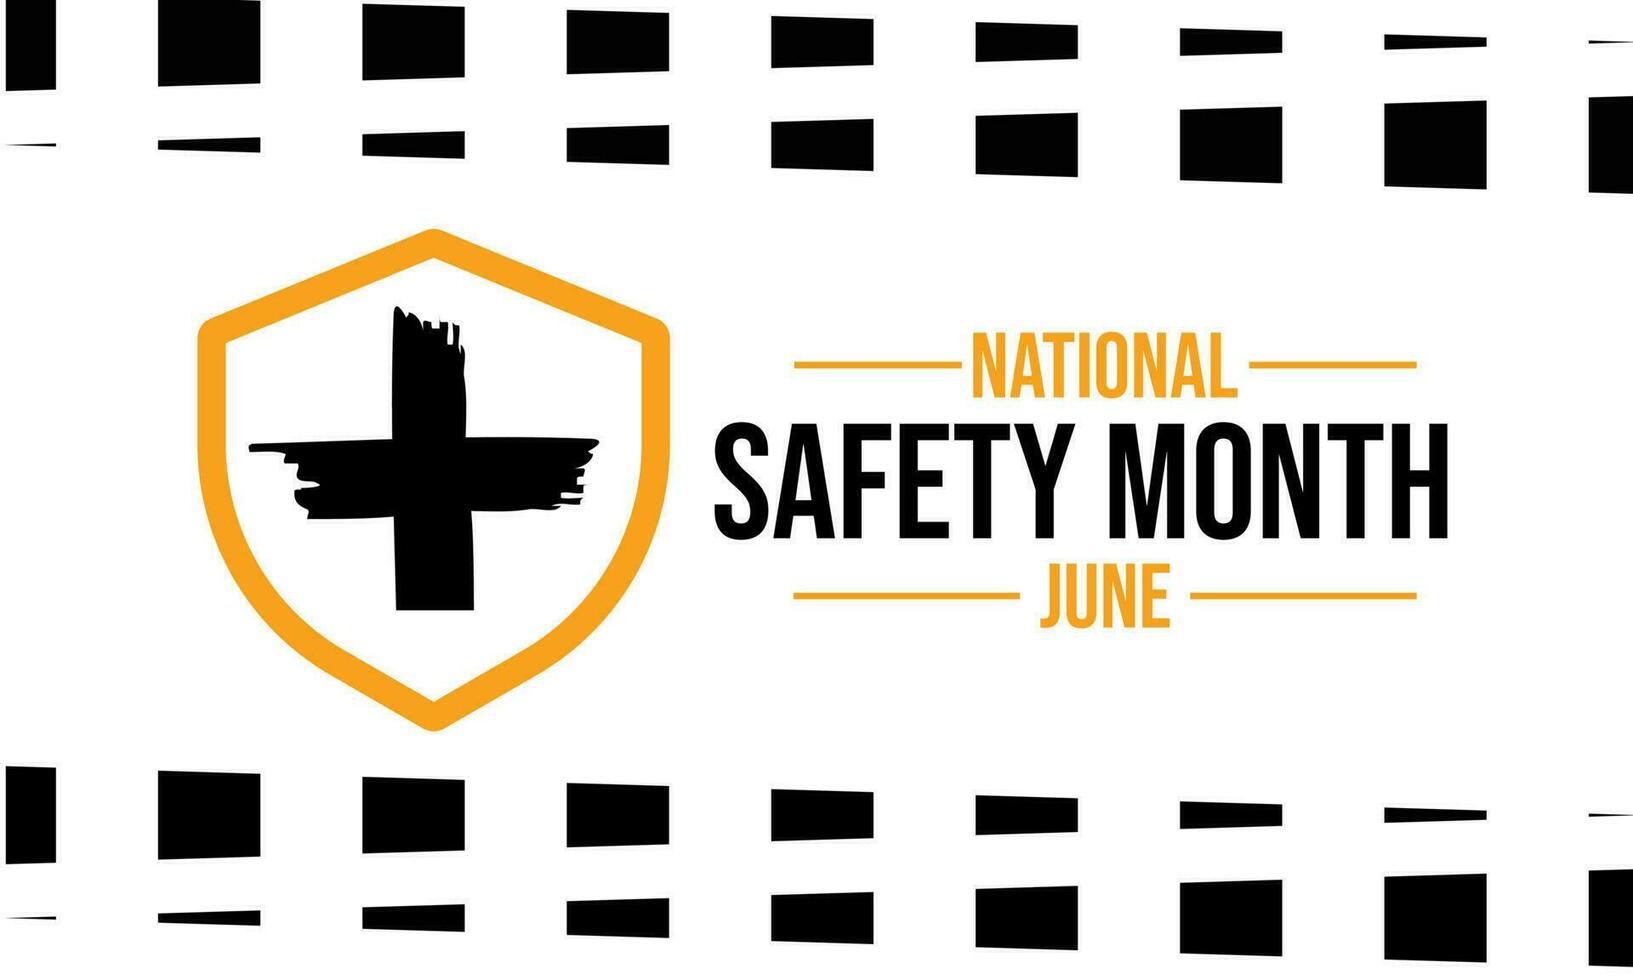 nationell säkerhet månad i juni. årlig månad lång berömd i förenad stater vektor